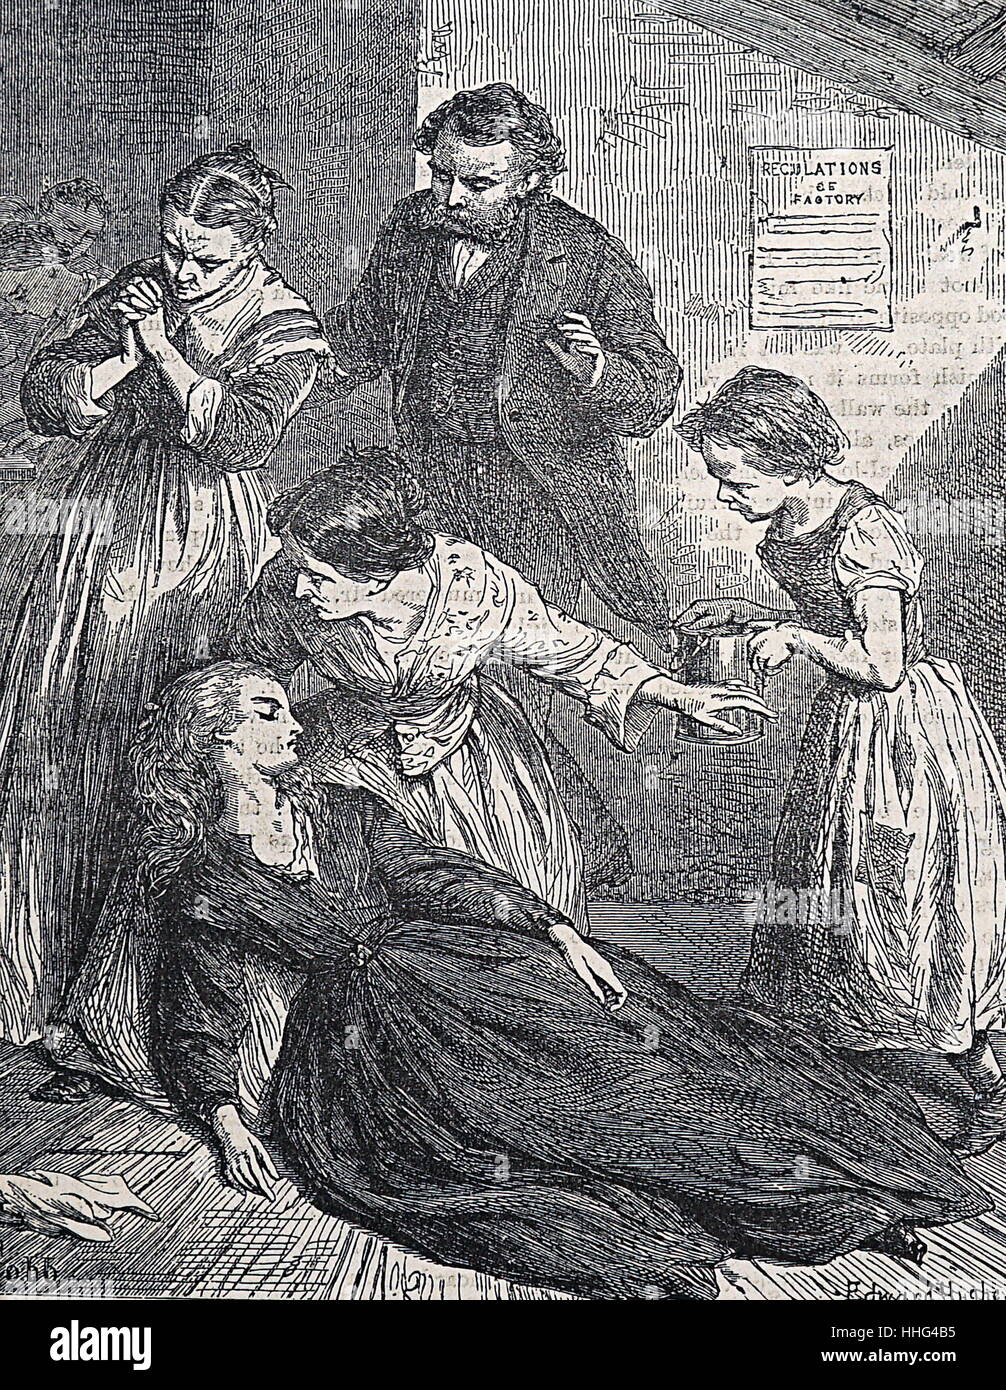 Frau Supervisor in einer East End von London button Factory; Ohnmacht aus schlechte Belüftung und Unterernährung. Abbildung von Edward Hughes; 1890 Stockfoto